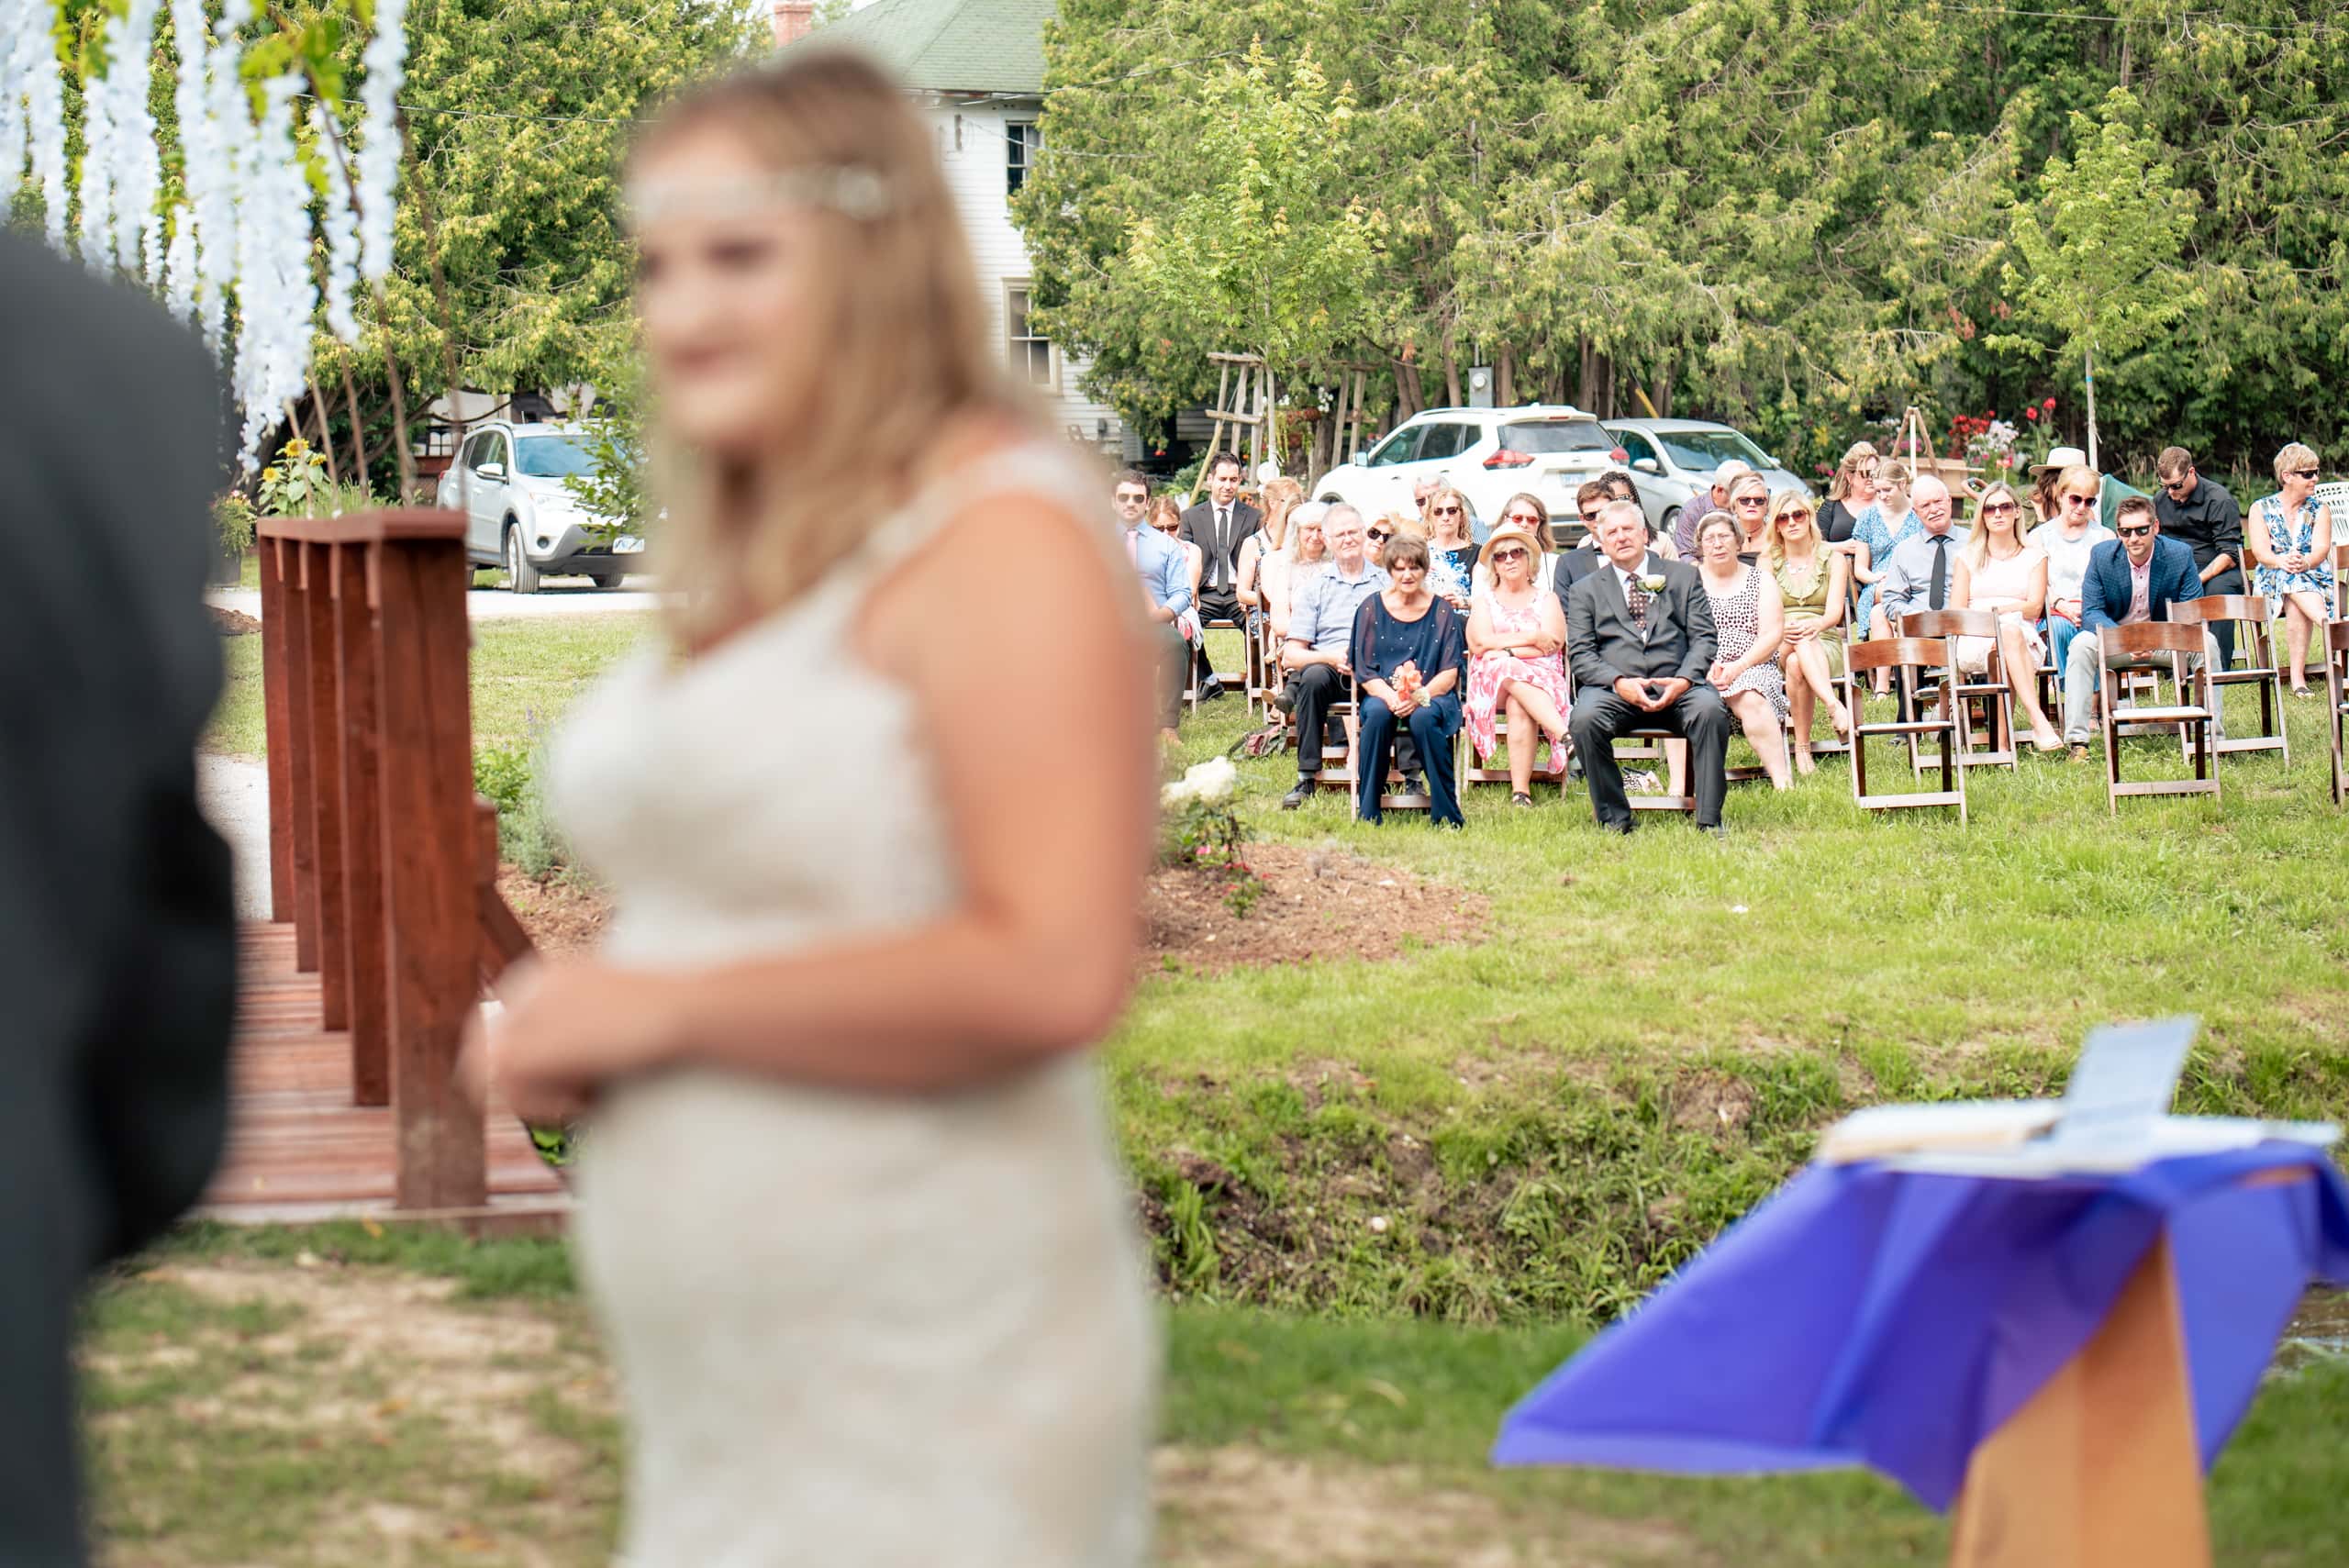 wedding ceremony at rustic farm wedding by Durham Region Wedding Photographer Brian Ly Photography